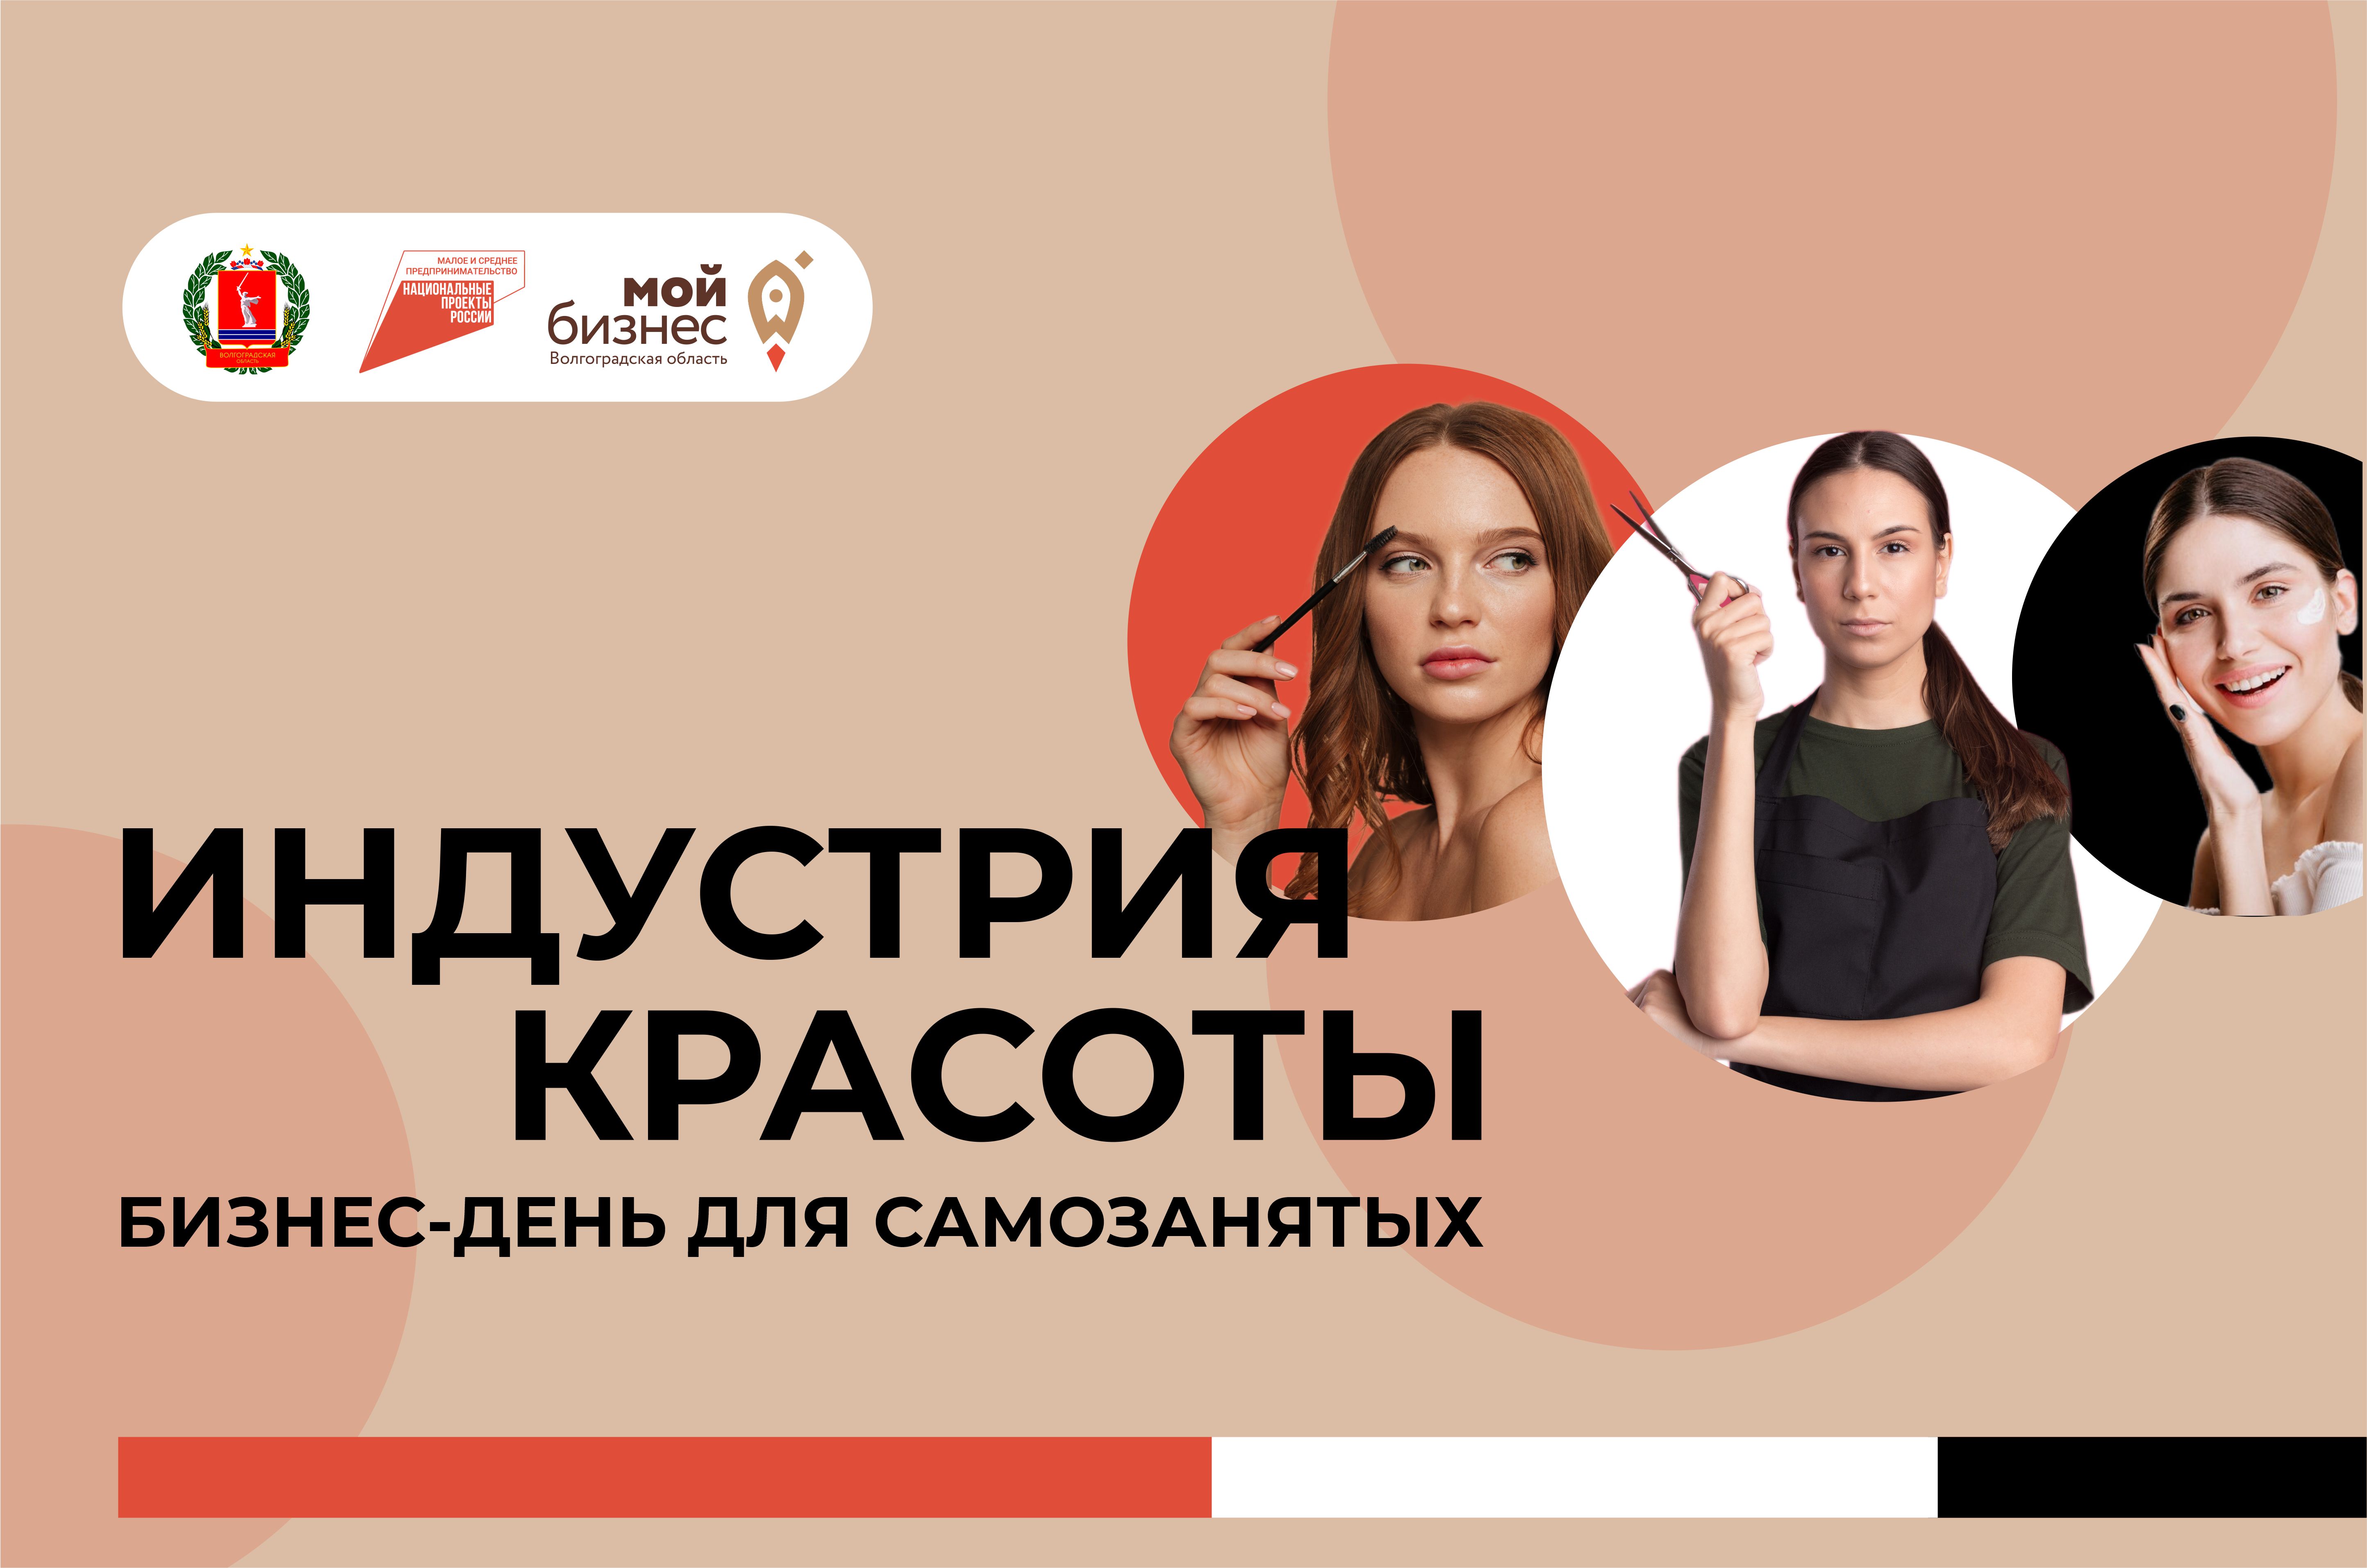 В Волгограде пройдет бизнес-день для самозанятых индустрии красоты